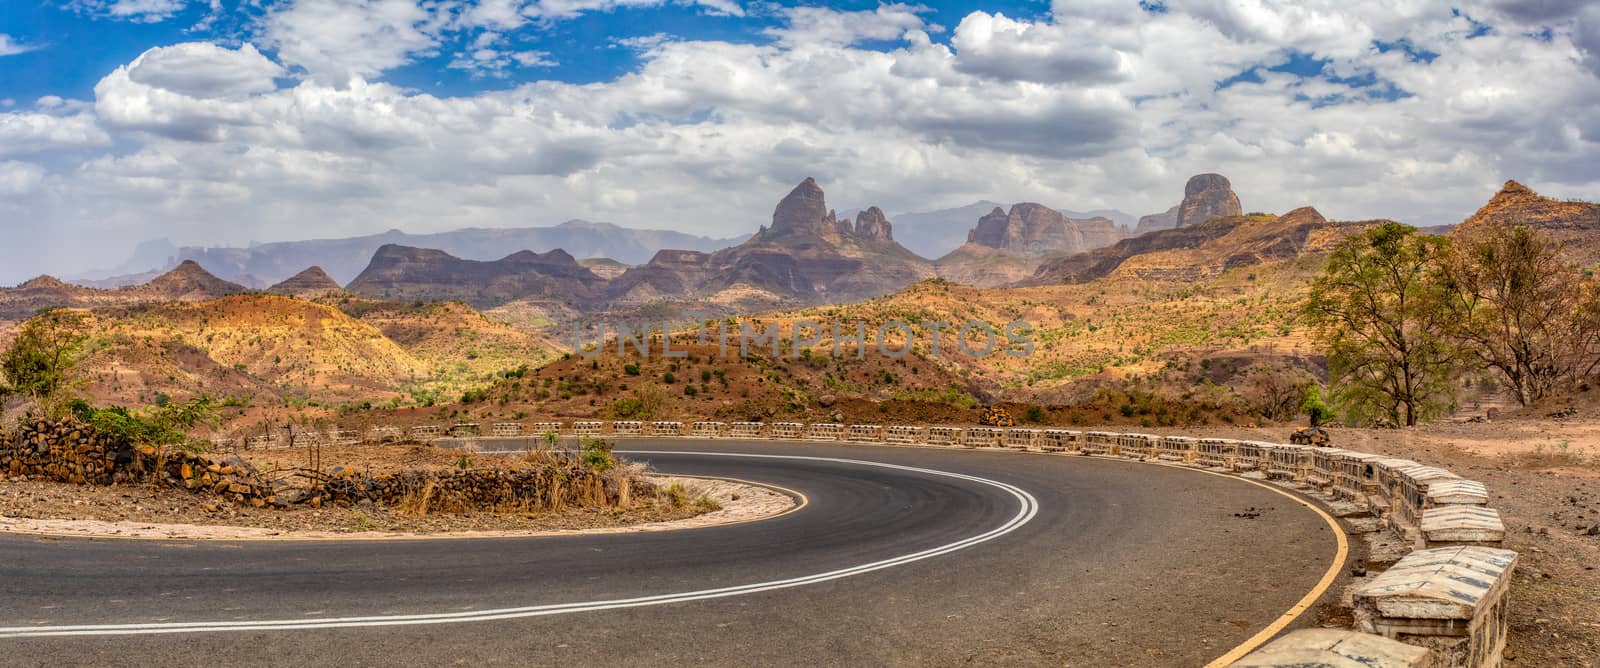 country road through Simien Mountains, Ethiopia by artush